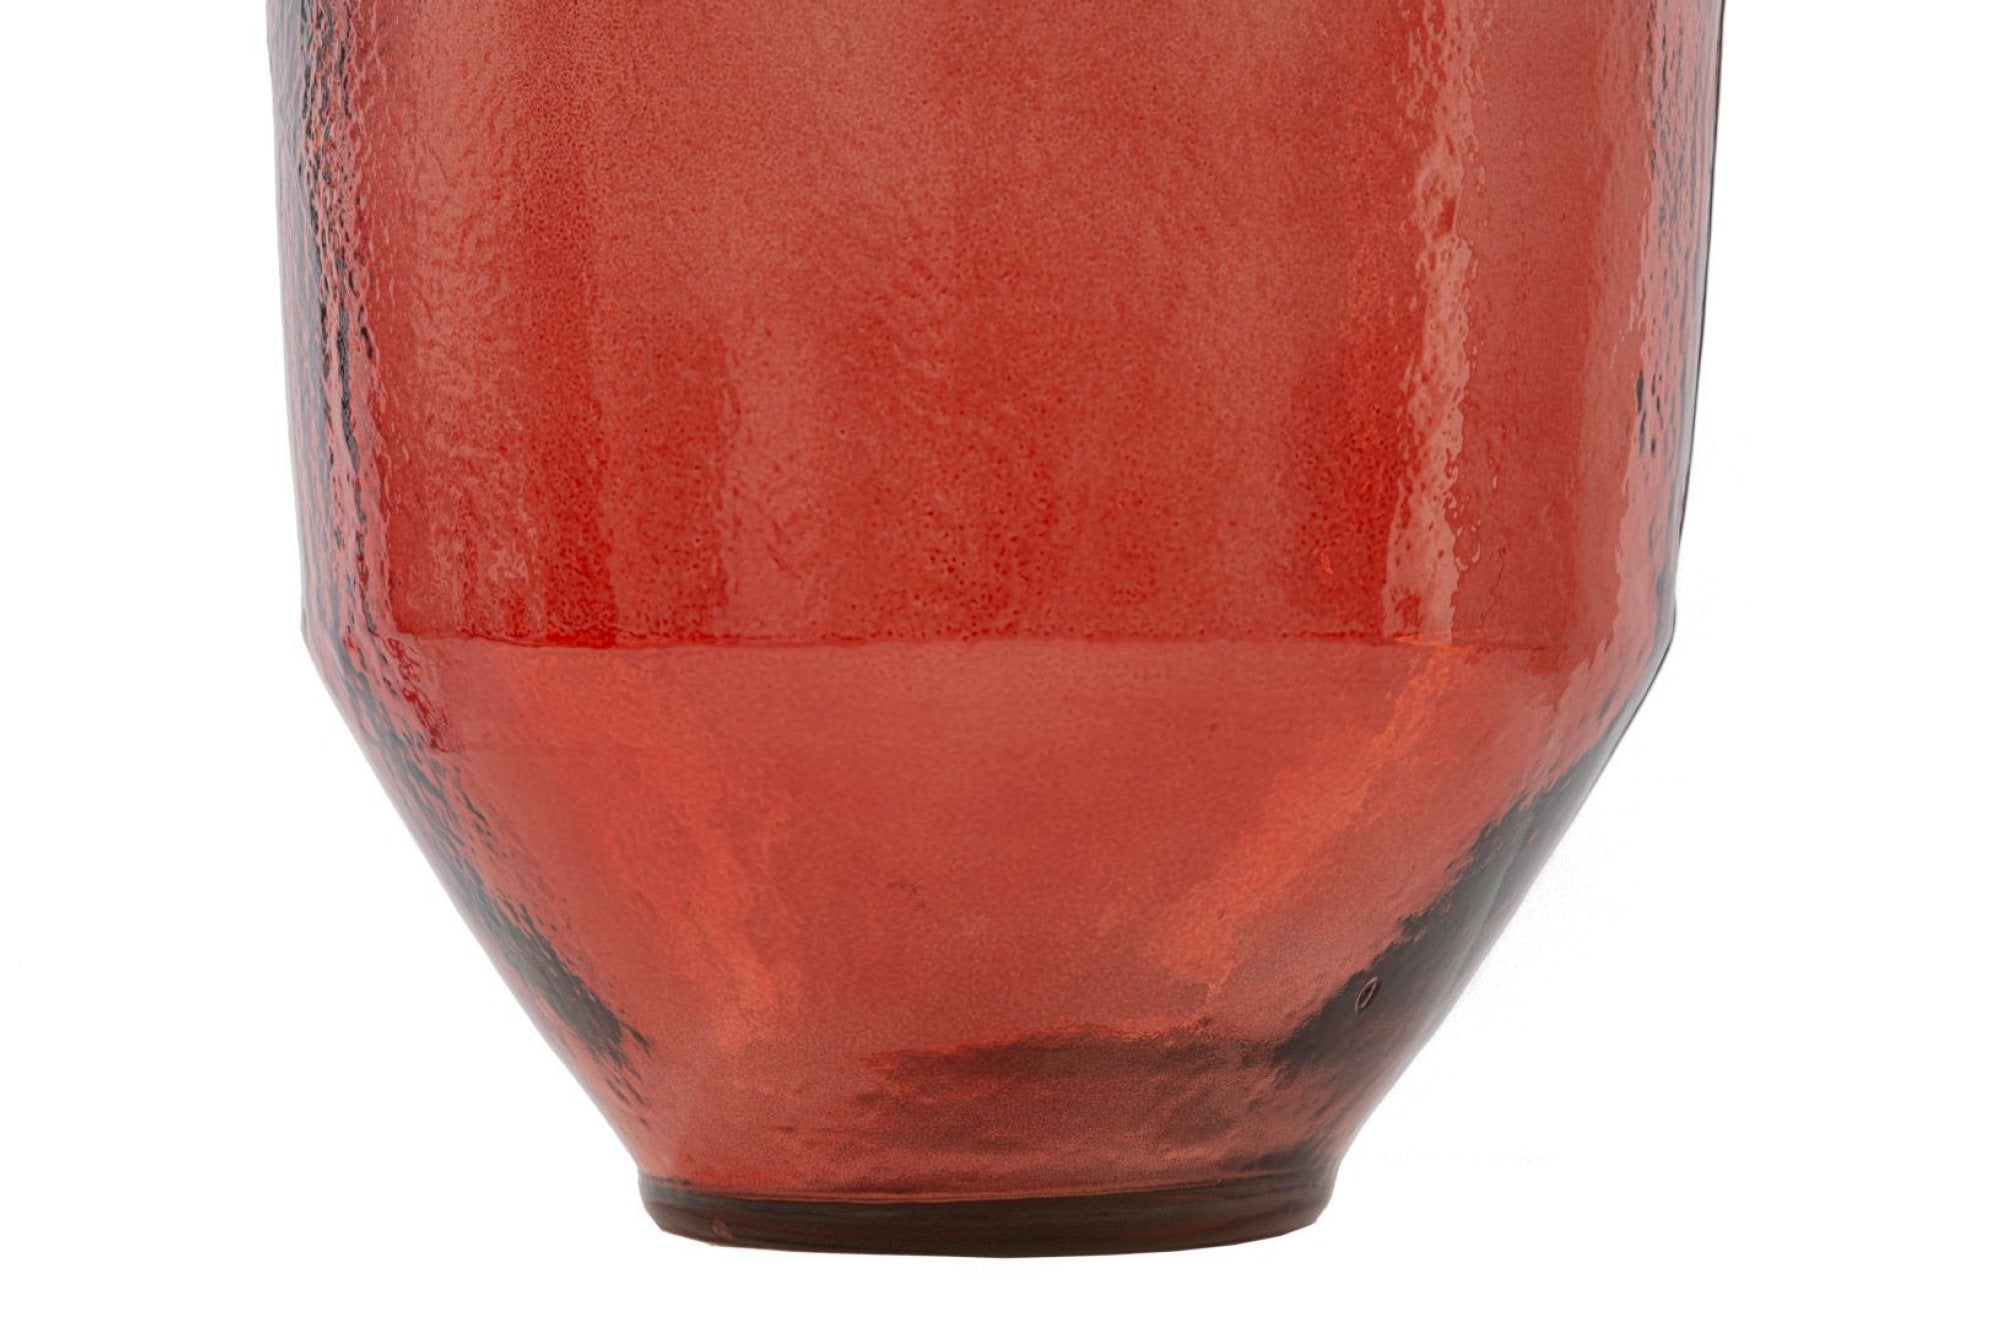 Mauro ferretti adobe piros üveg váza